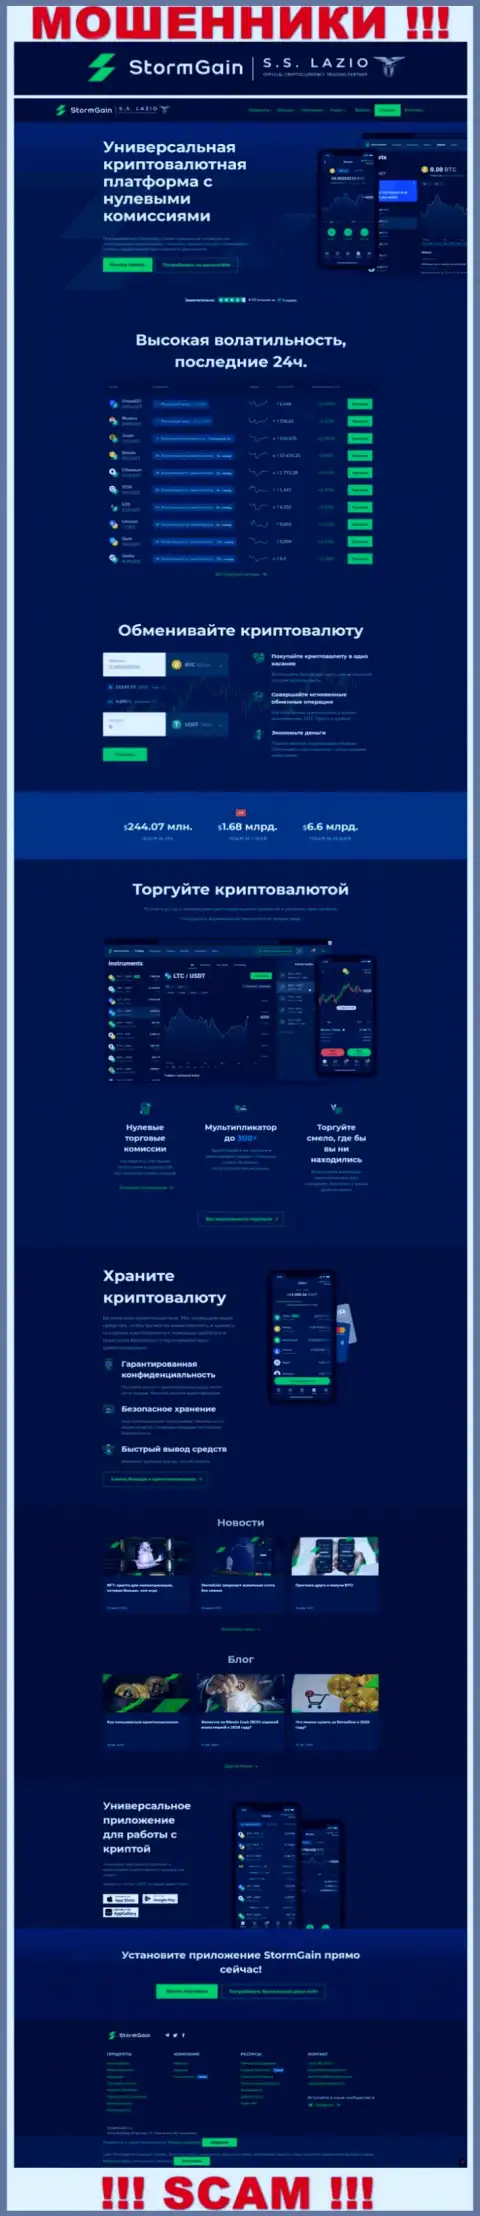 Официальный сайт жуликов и шулеров компании ШтормГаин